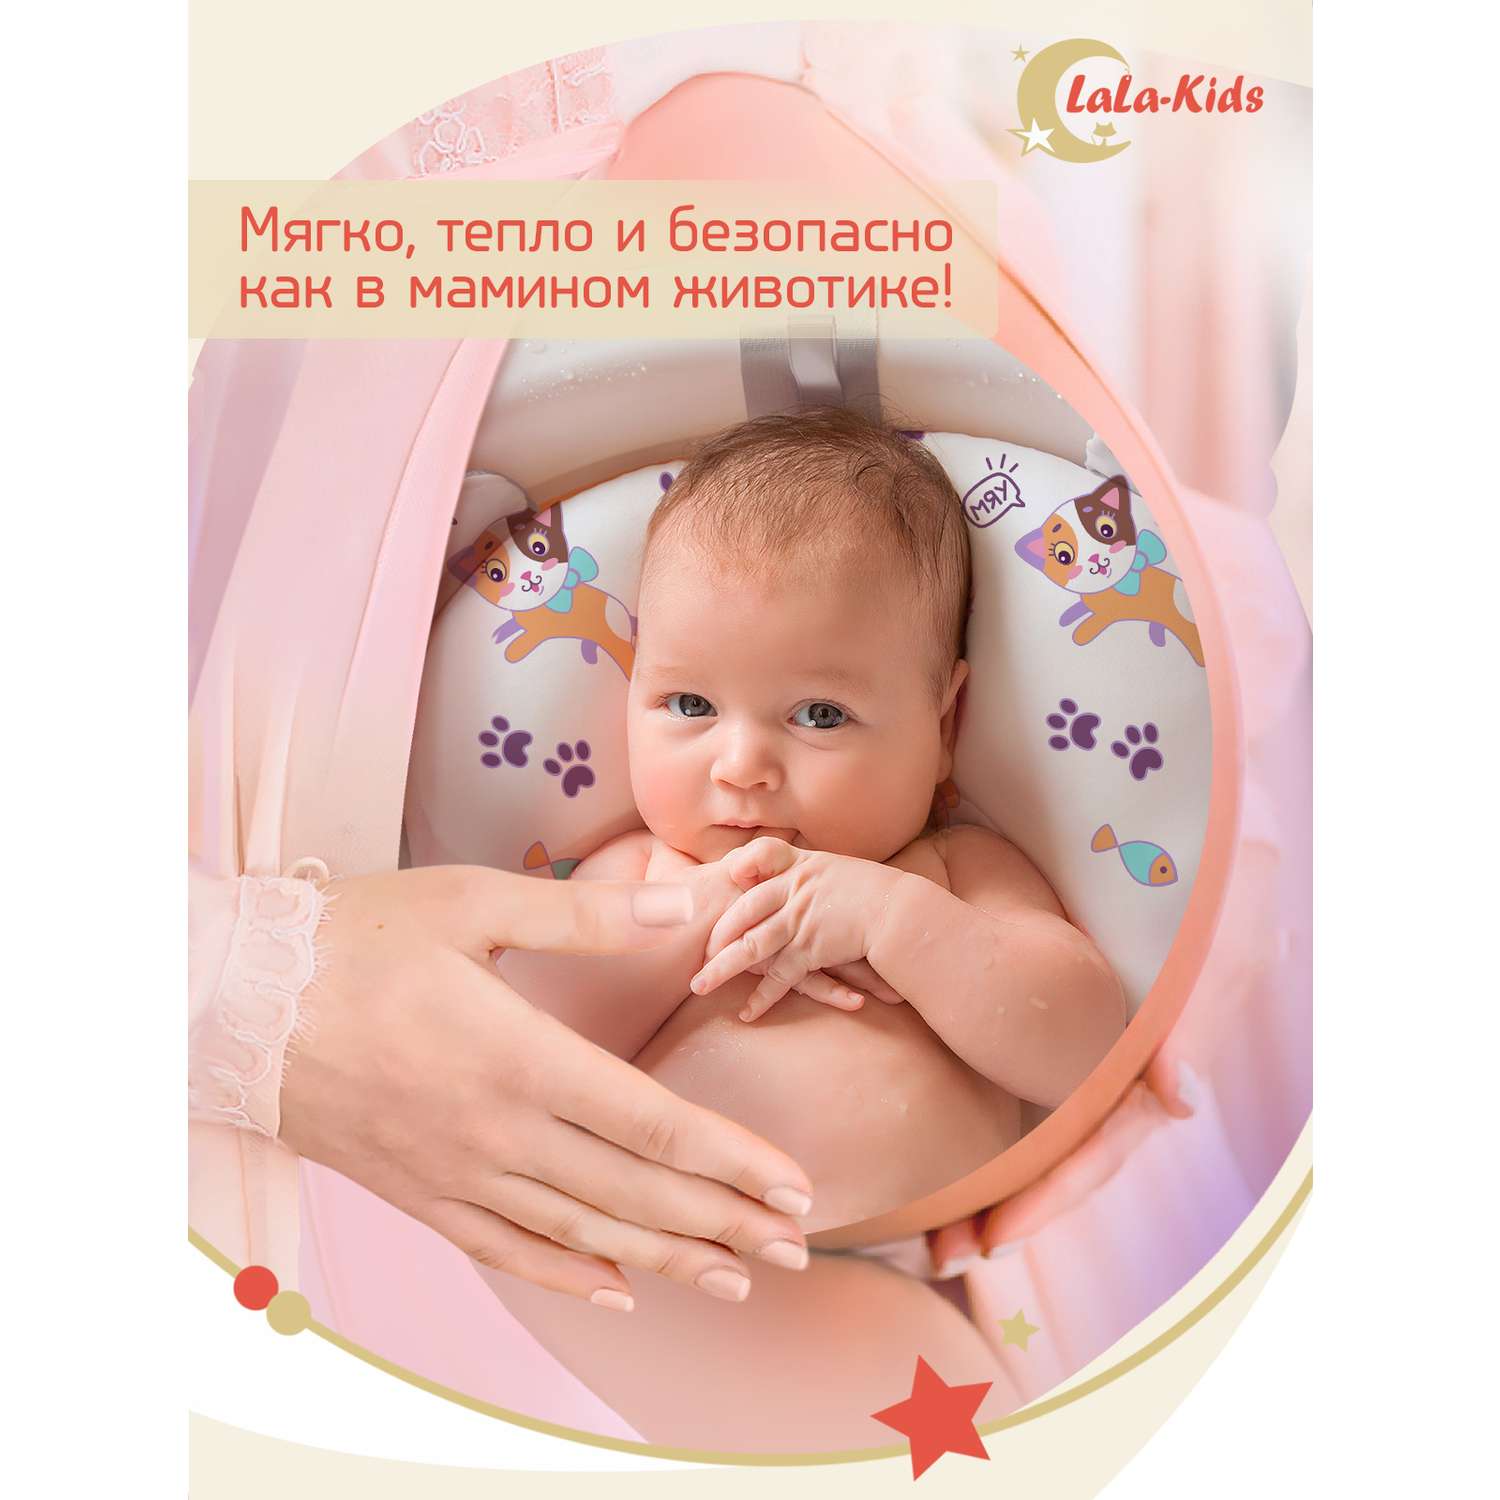 Детская ванночка с термометром LaLa-Kids складная для купания новорожденных с матрасиком в комплекте - фото 12